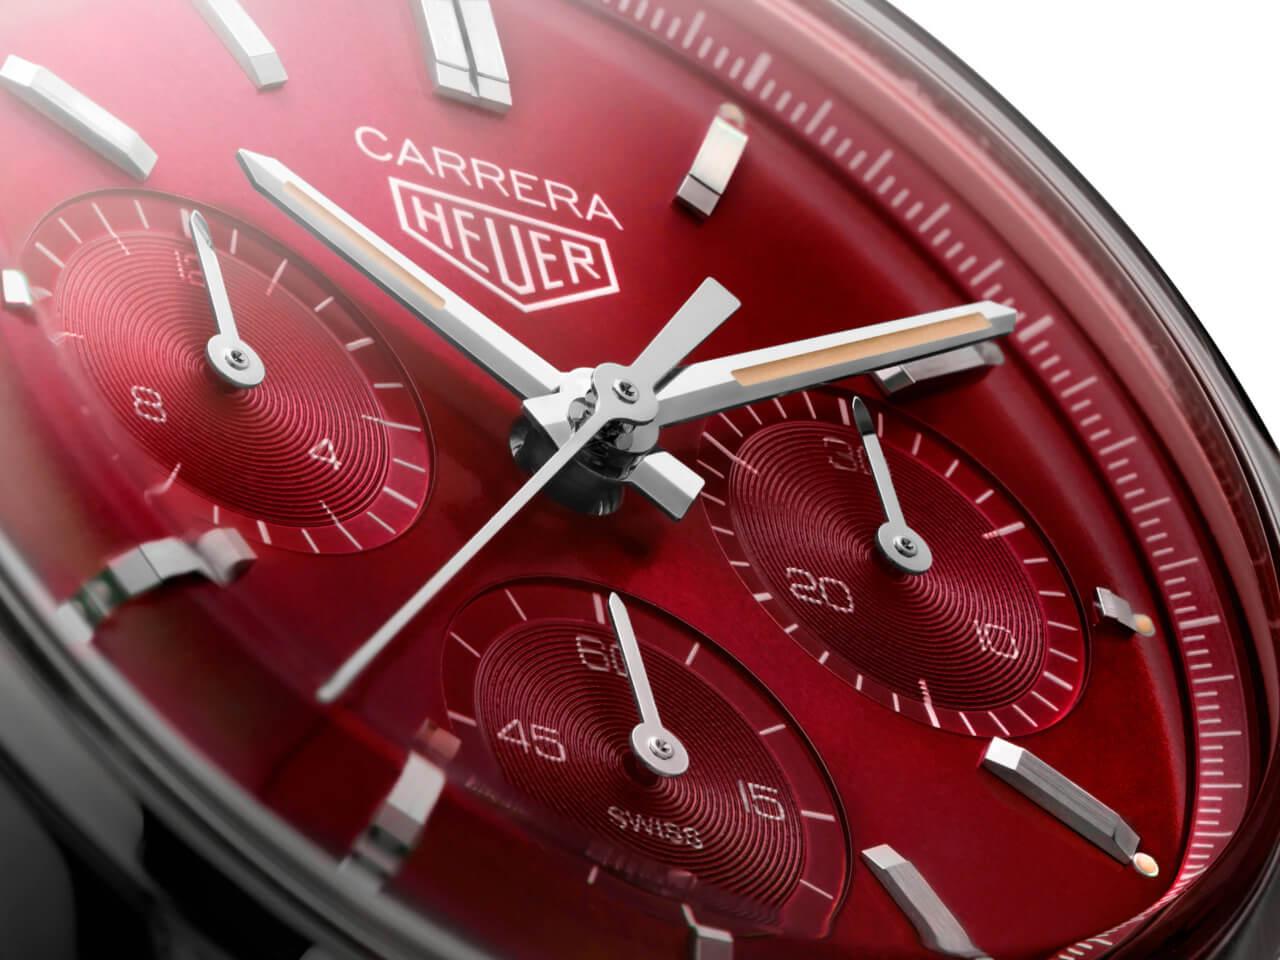 タグ・ホイヤーのカレラは、腕時計初心者のエントリーモデル向きの看板モデルである